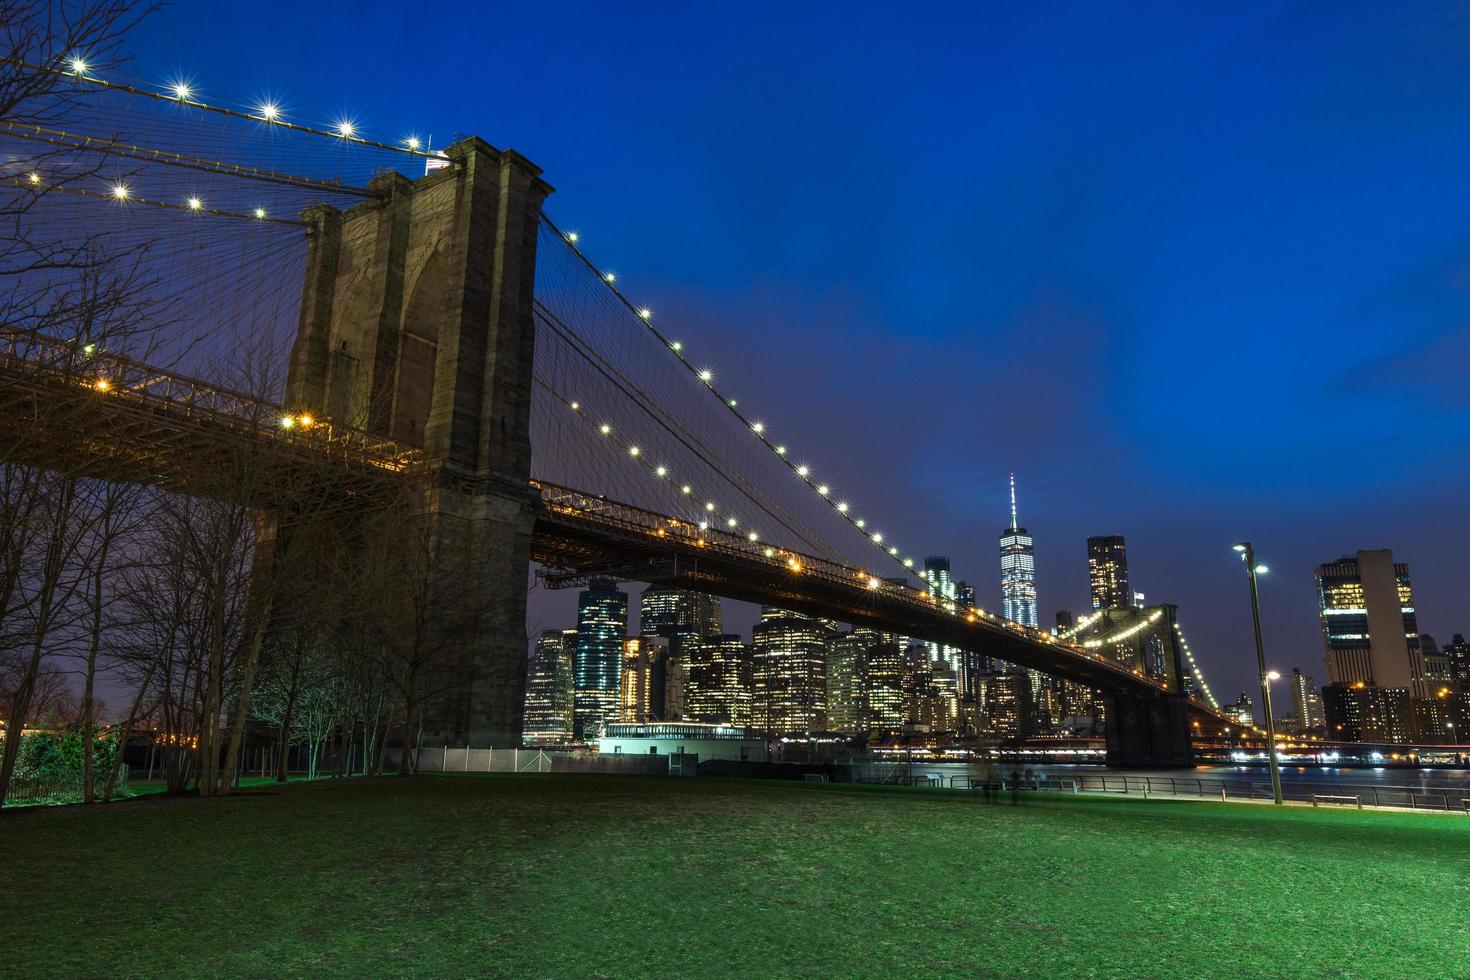 brooklyn bridge i manhattan centrum med stadsbild på natten new york usa foto